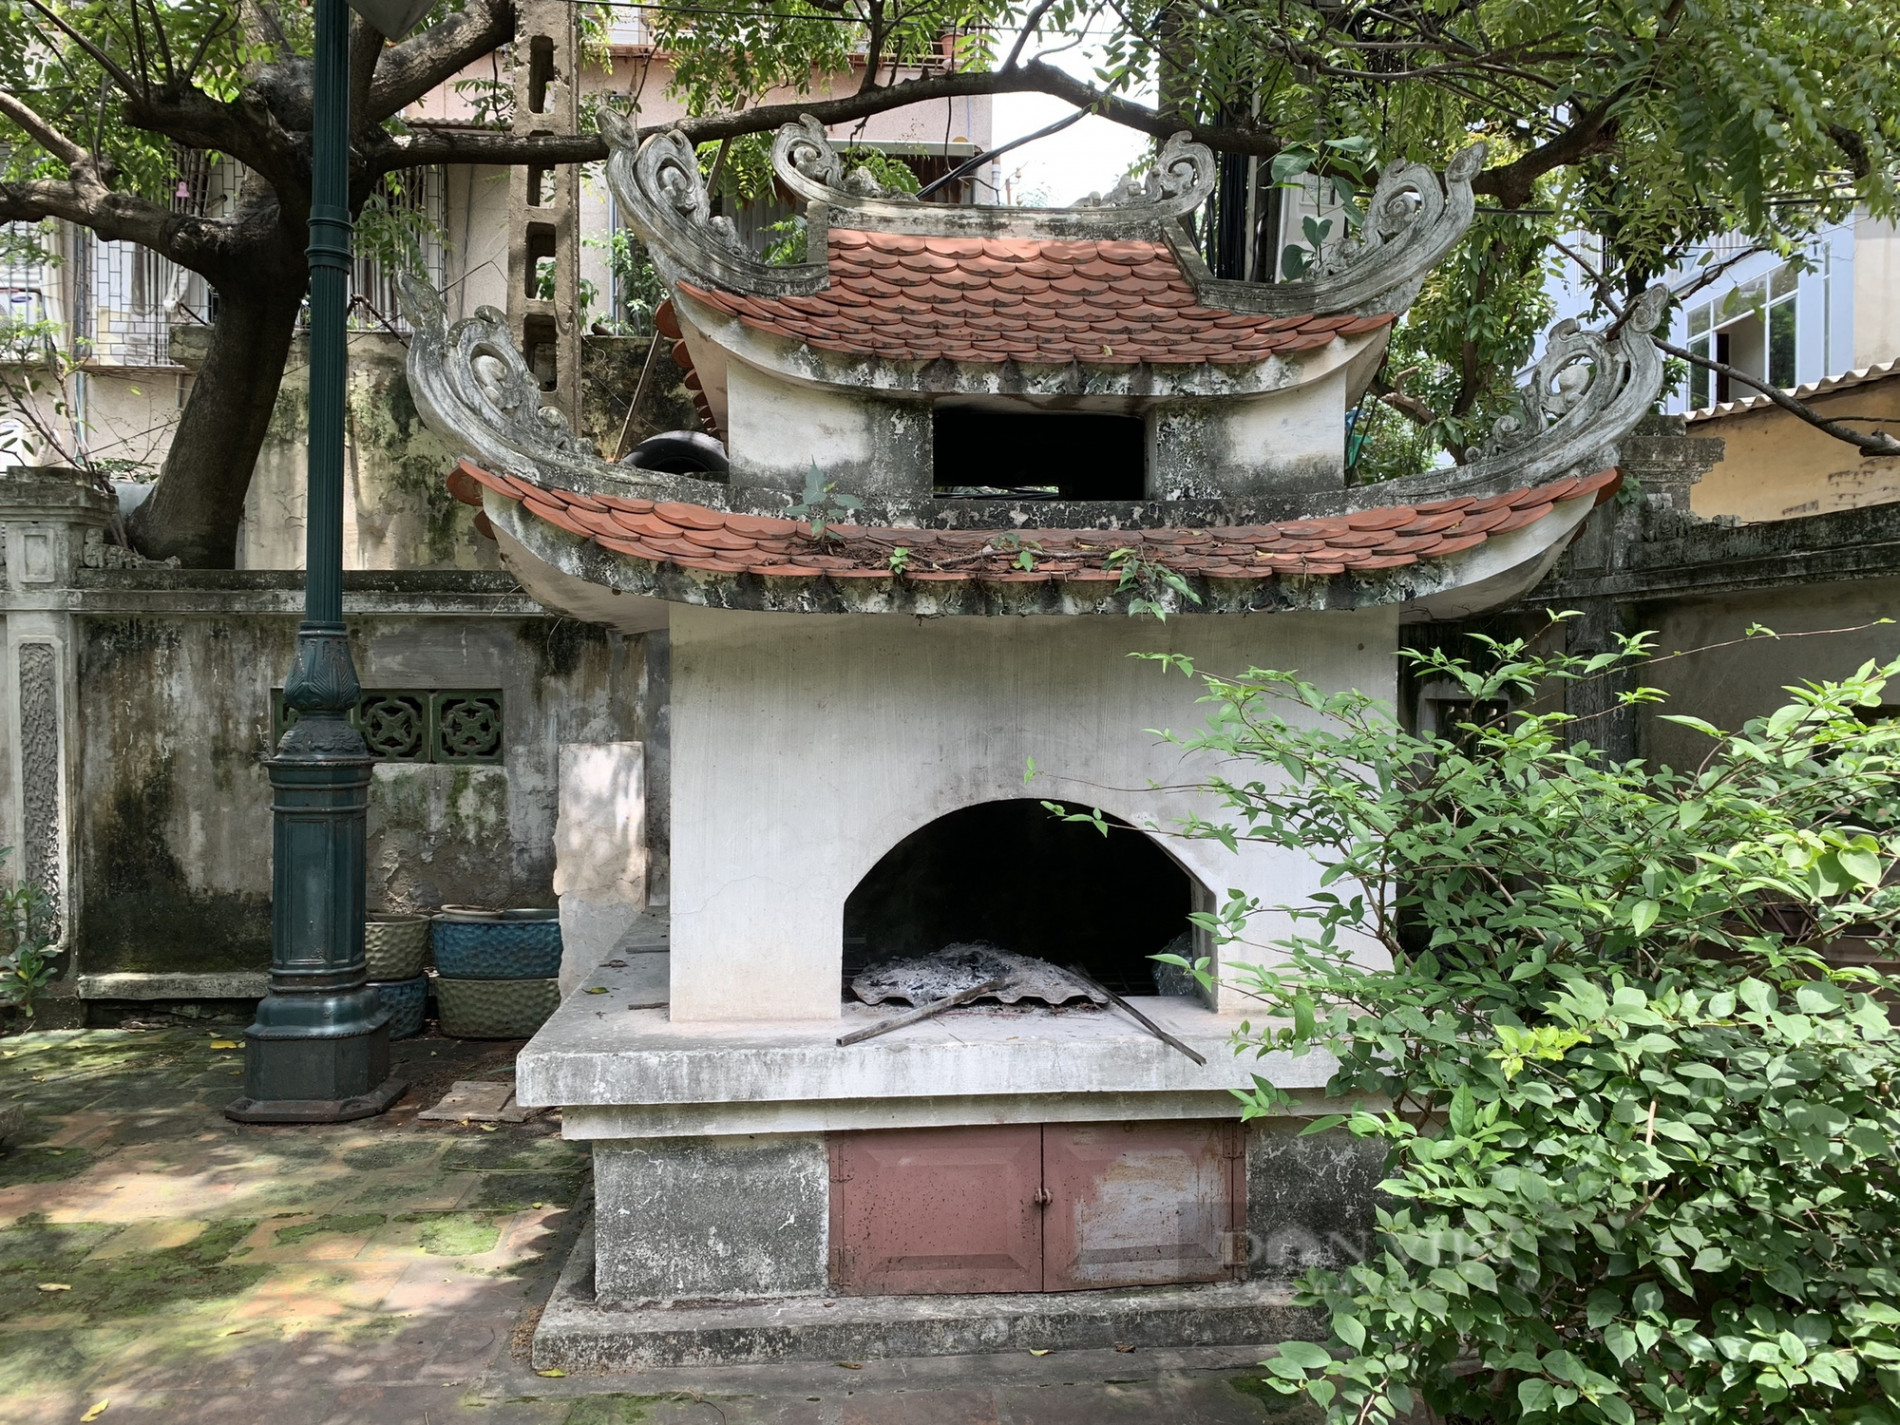 Kiến trúc độc đáo bên trong khu lăng mộ cổ trăm năm tuổi ở giữa lòng Thủ đô - Ảnh 10.